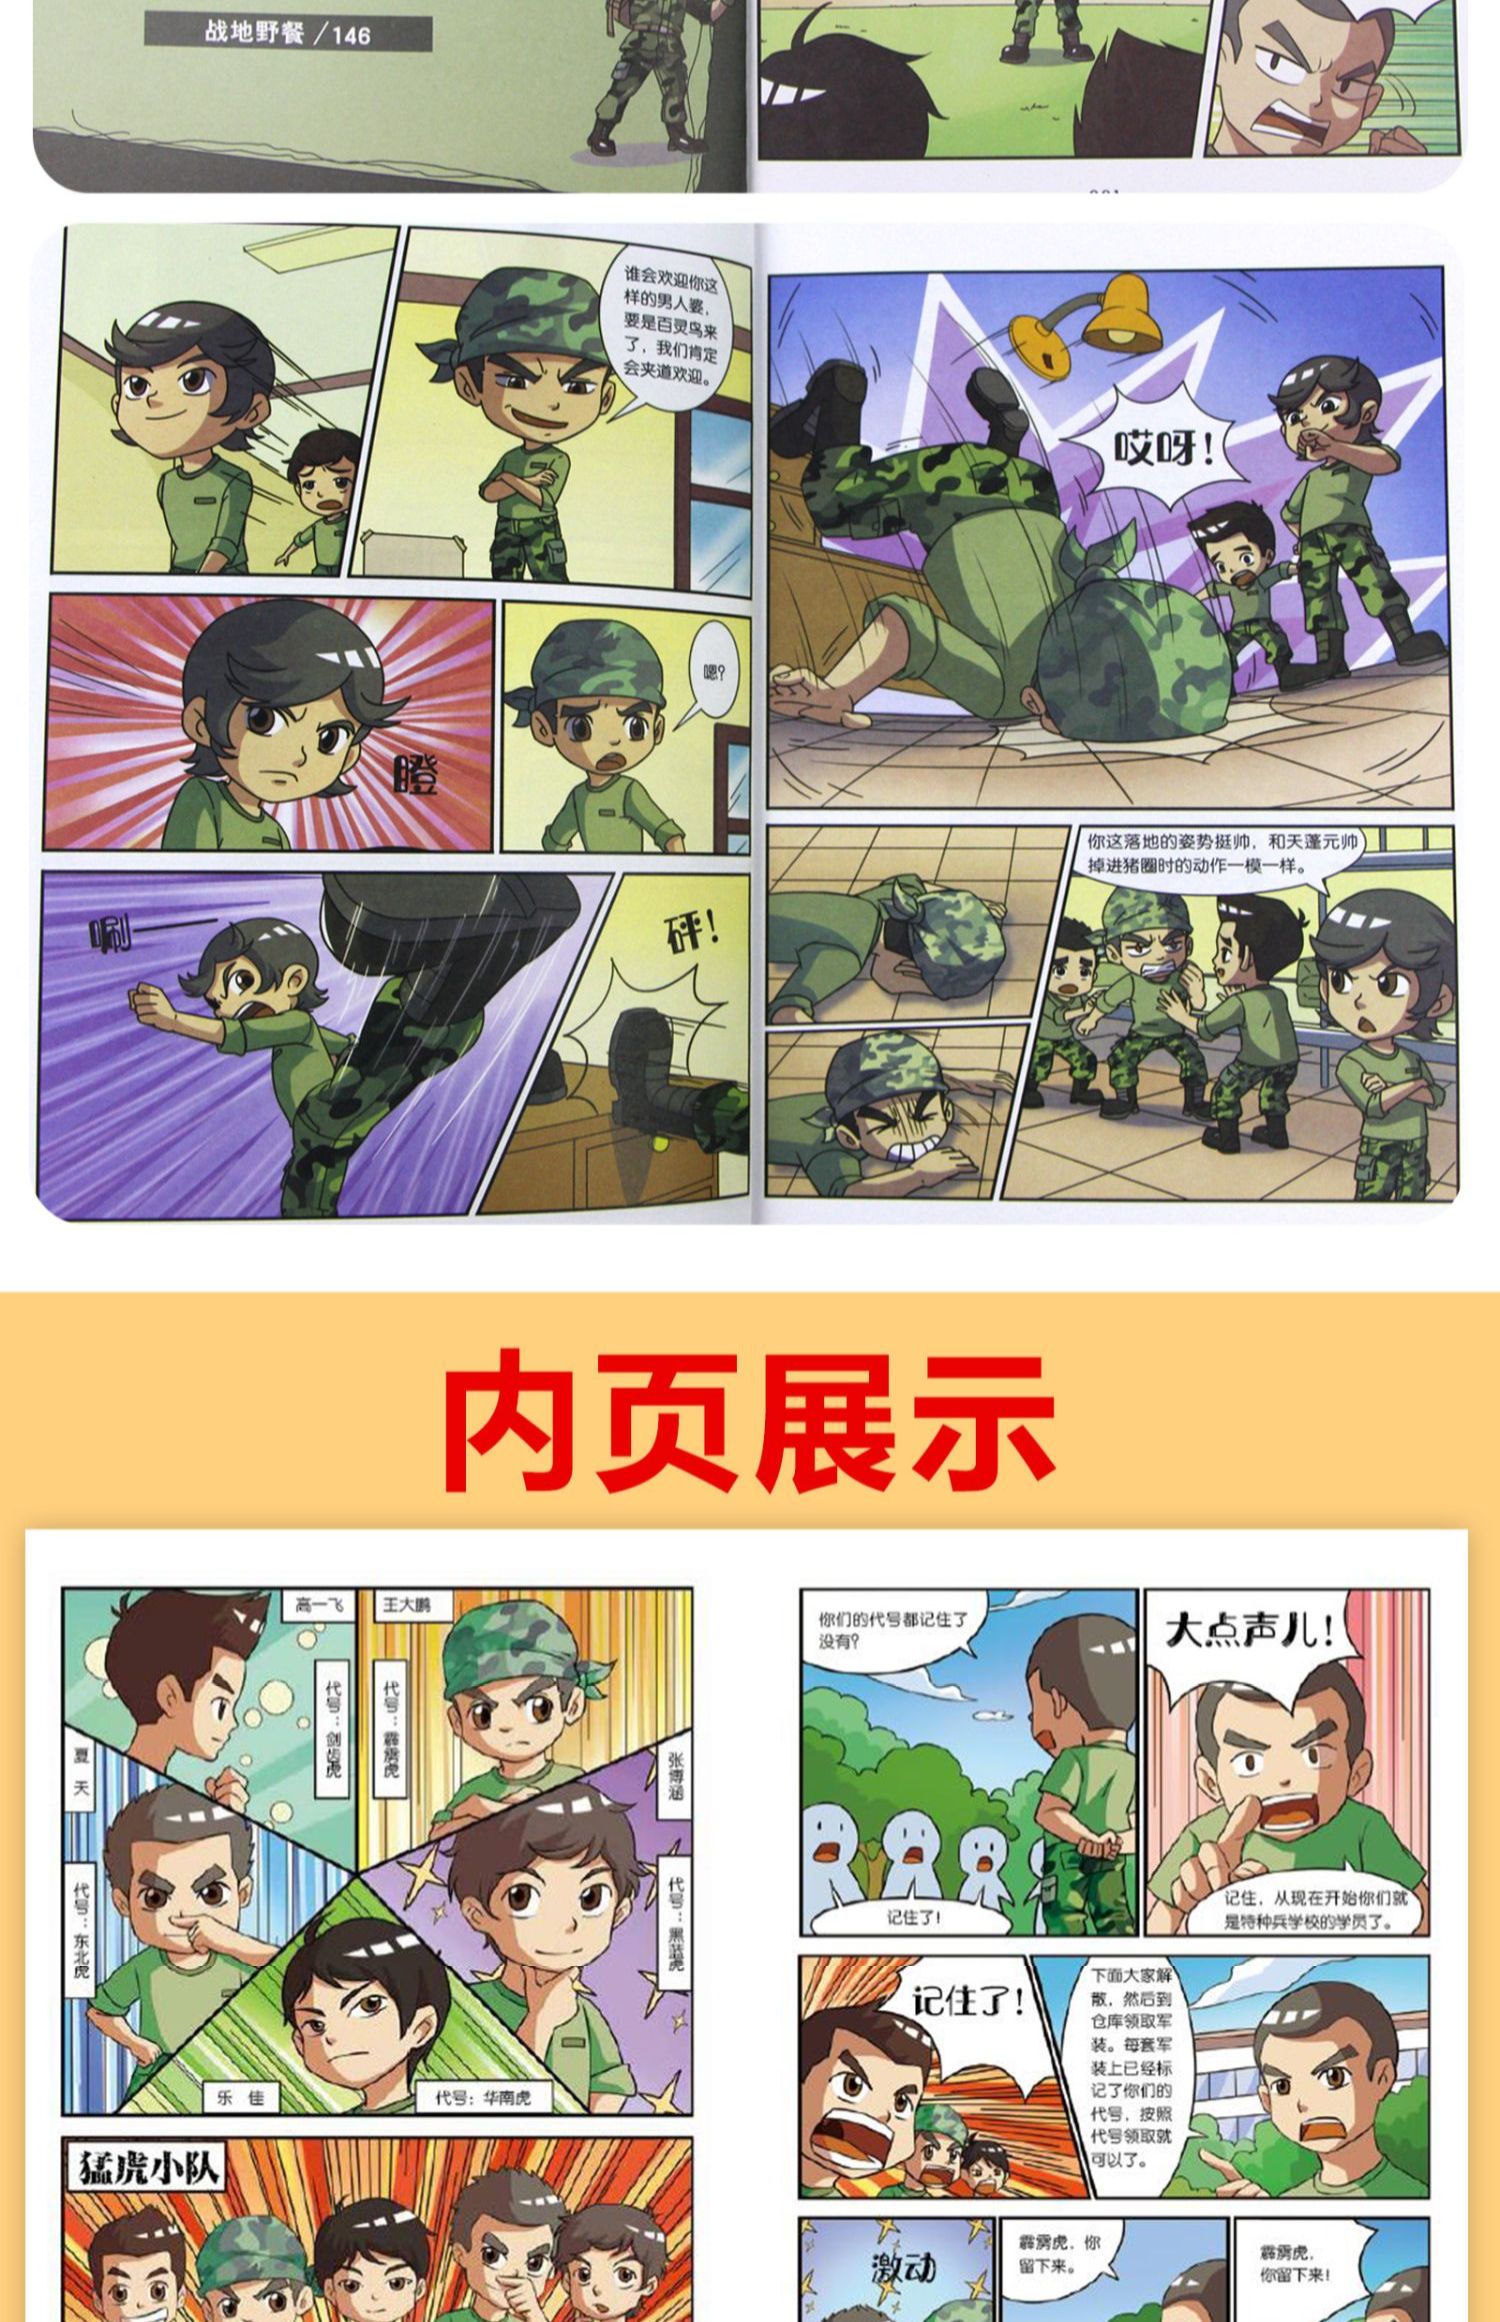 特种兵学校漫画版第一季全套四册 儿童绘本6一8岁分享阅读 幼儿园老师